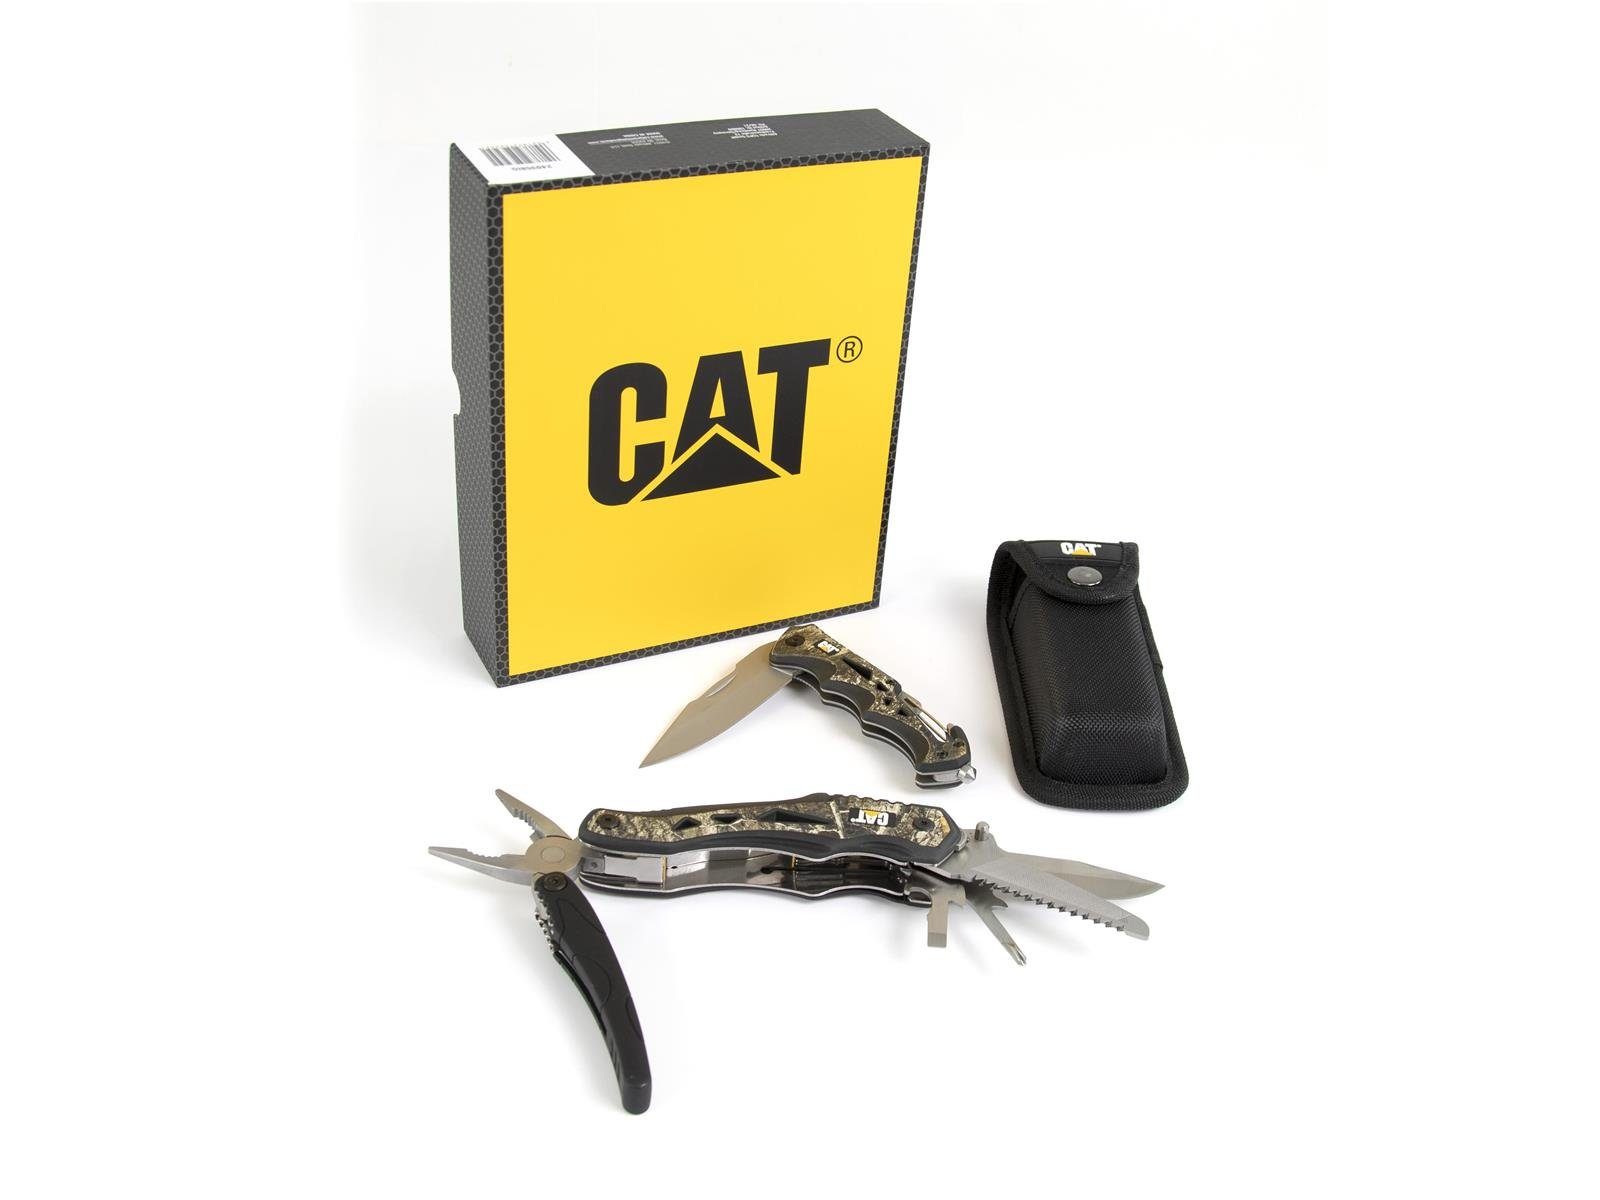 CATERPILLAR Taschenmesser CAT Multitool BOX Sicherheitshammer mit Taschen, Set Klappmesser (Set), 1 2er Glasfasergriff, Gürteltasche, Multitool, in 10 mit